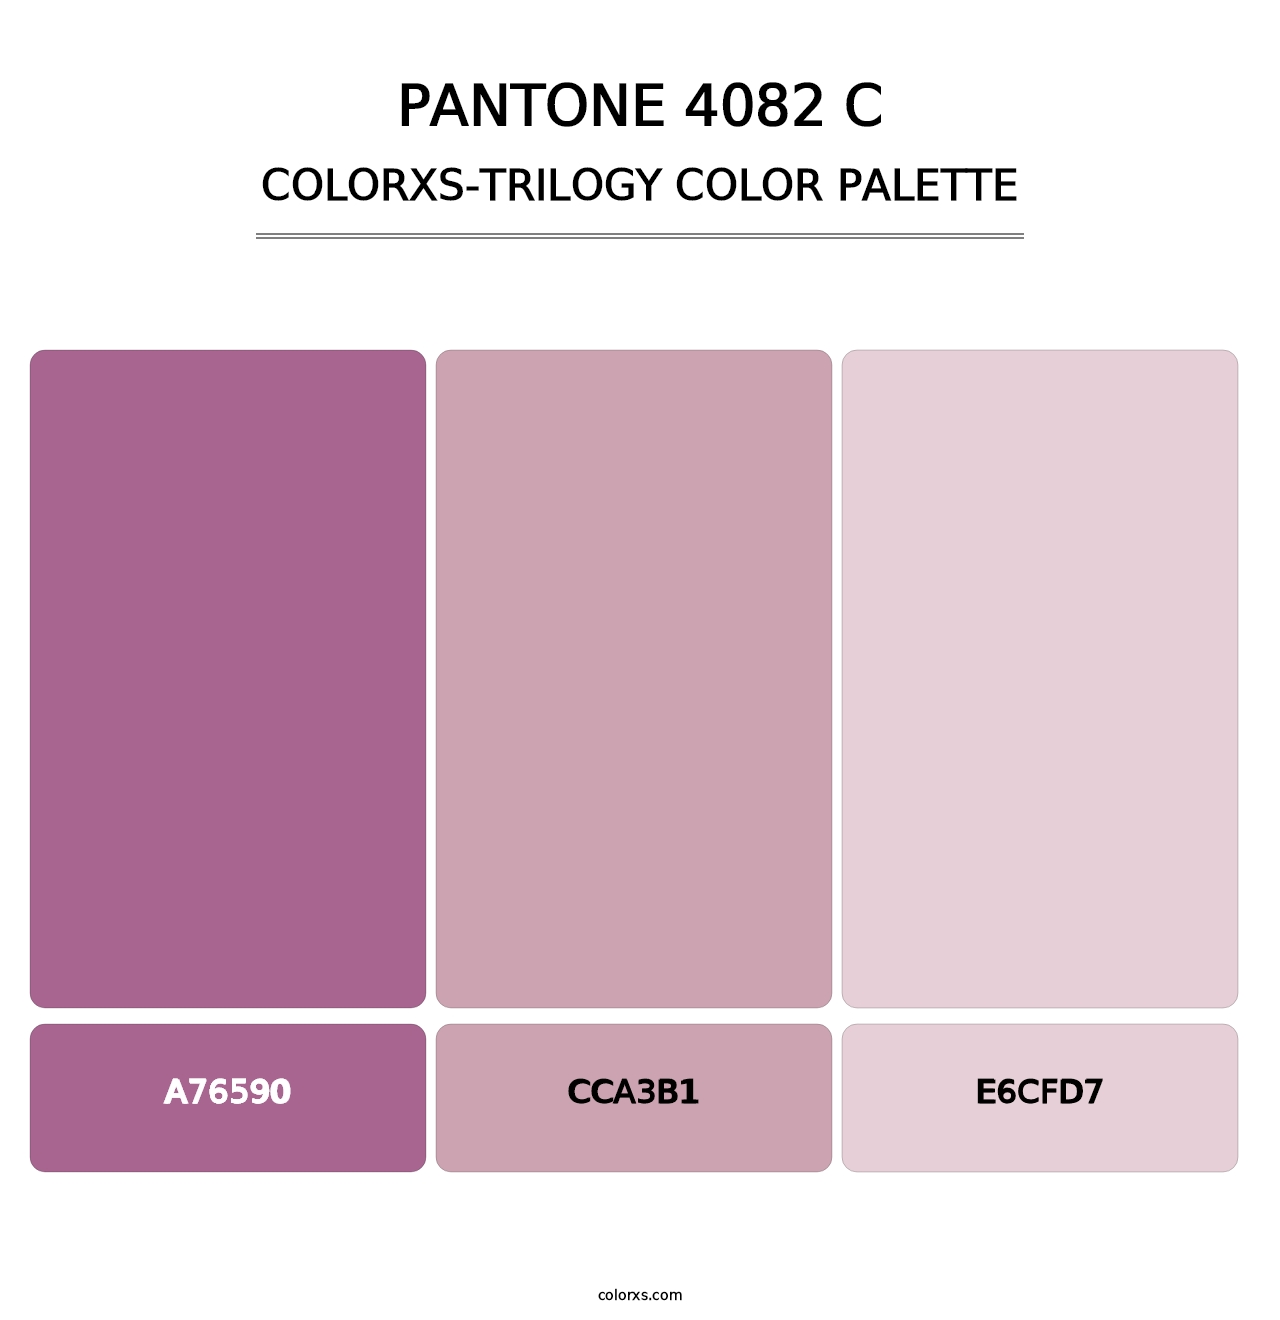 PANTONE 4082 C - Colorxs Trilogy Palette